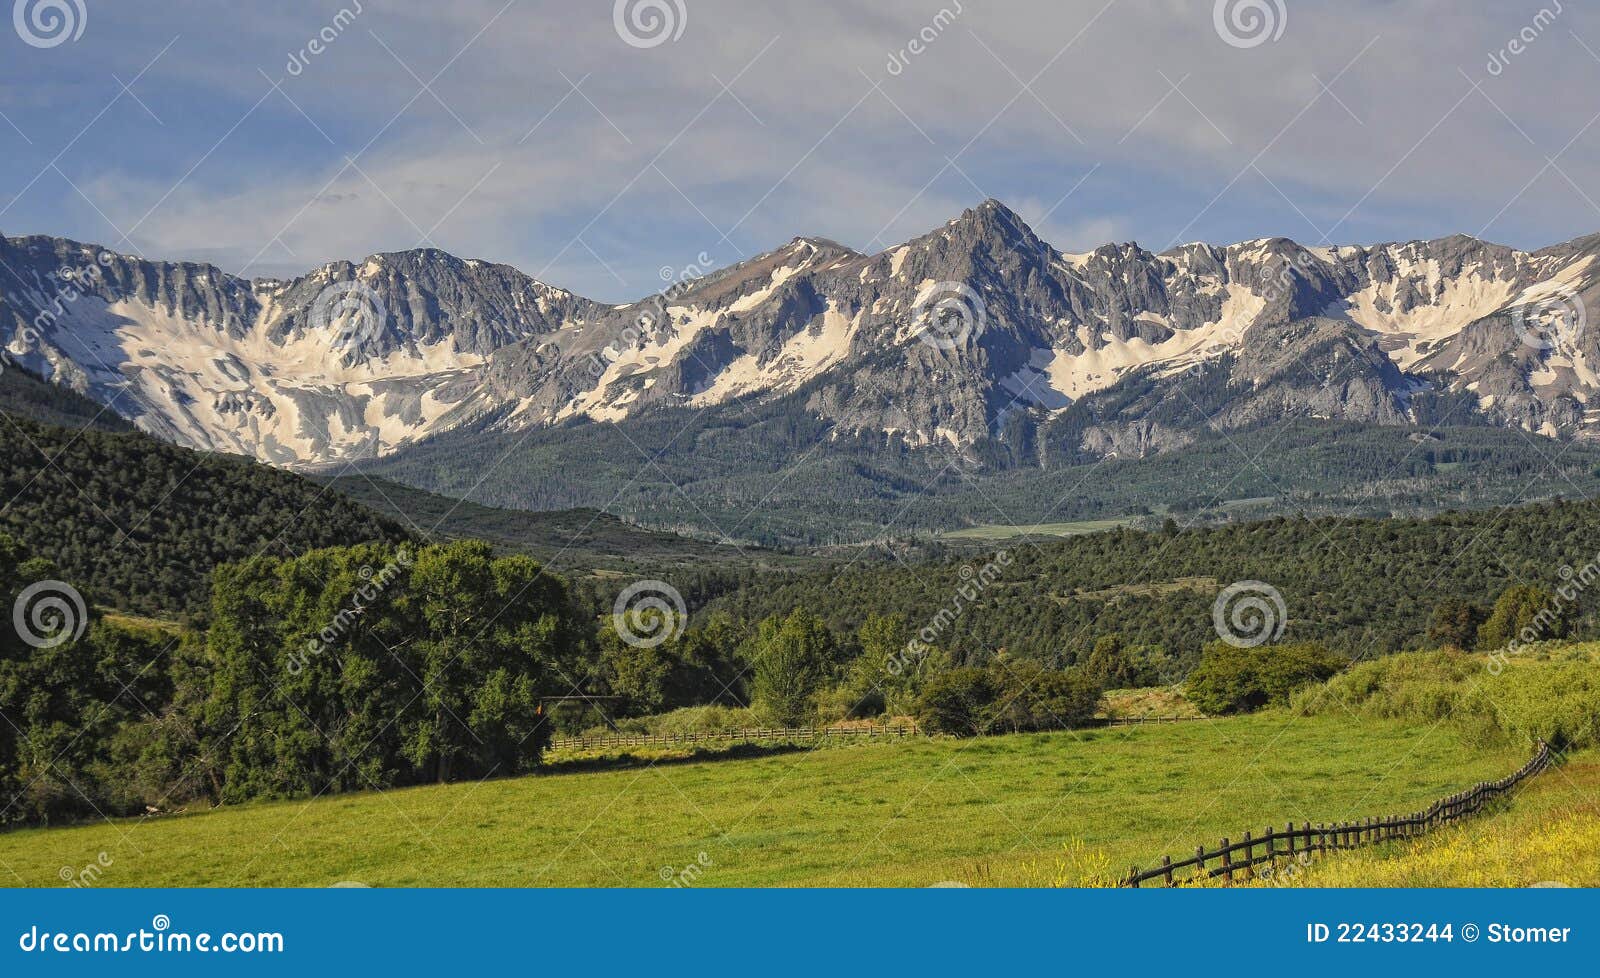 sneffels mountain range